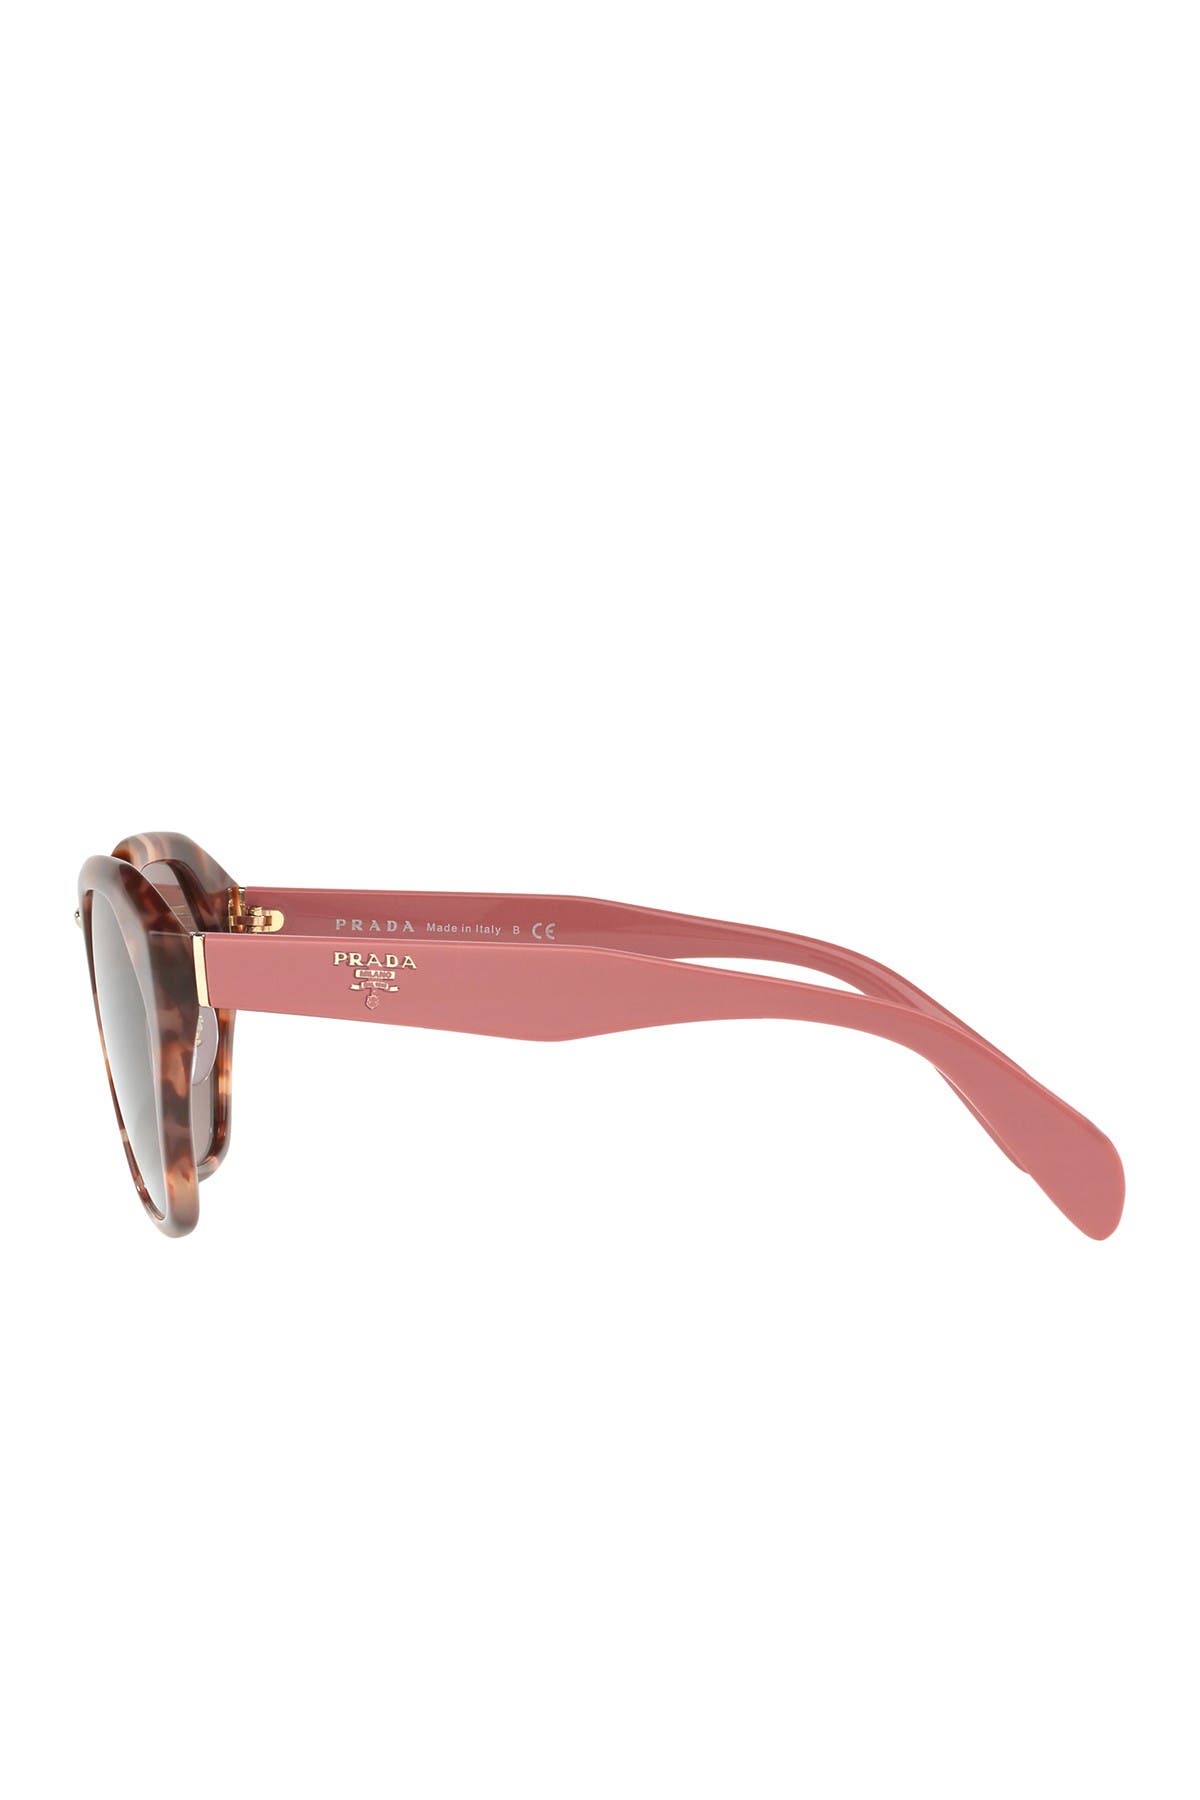 prada irregular heritage sunglasses